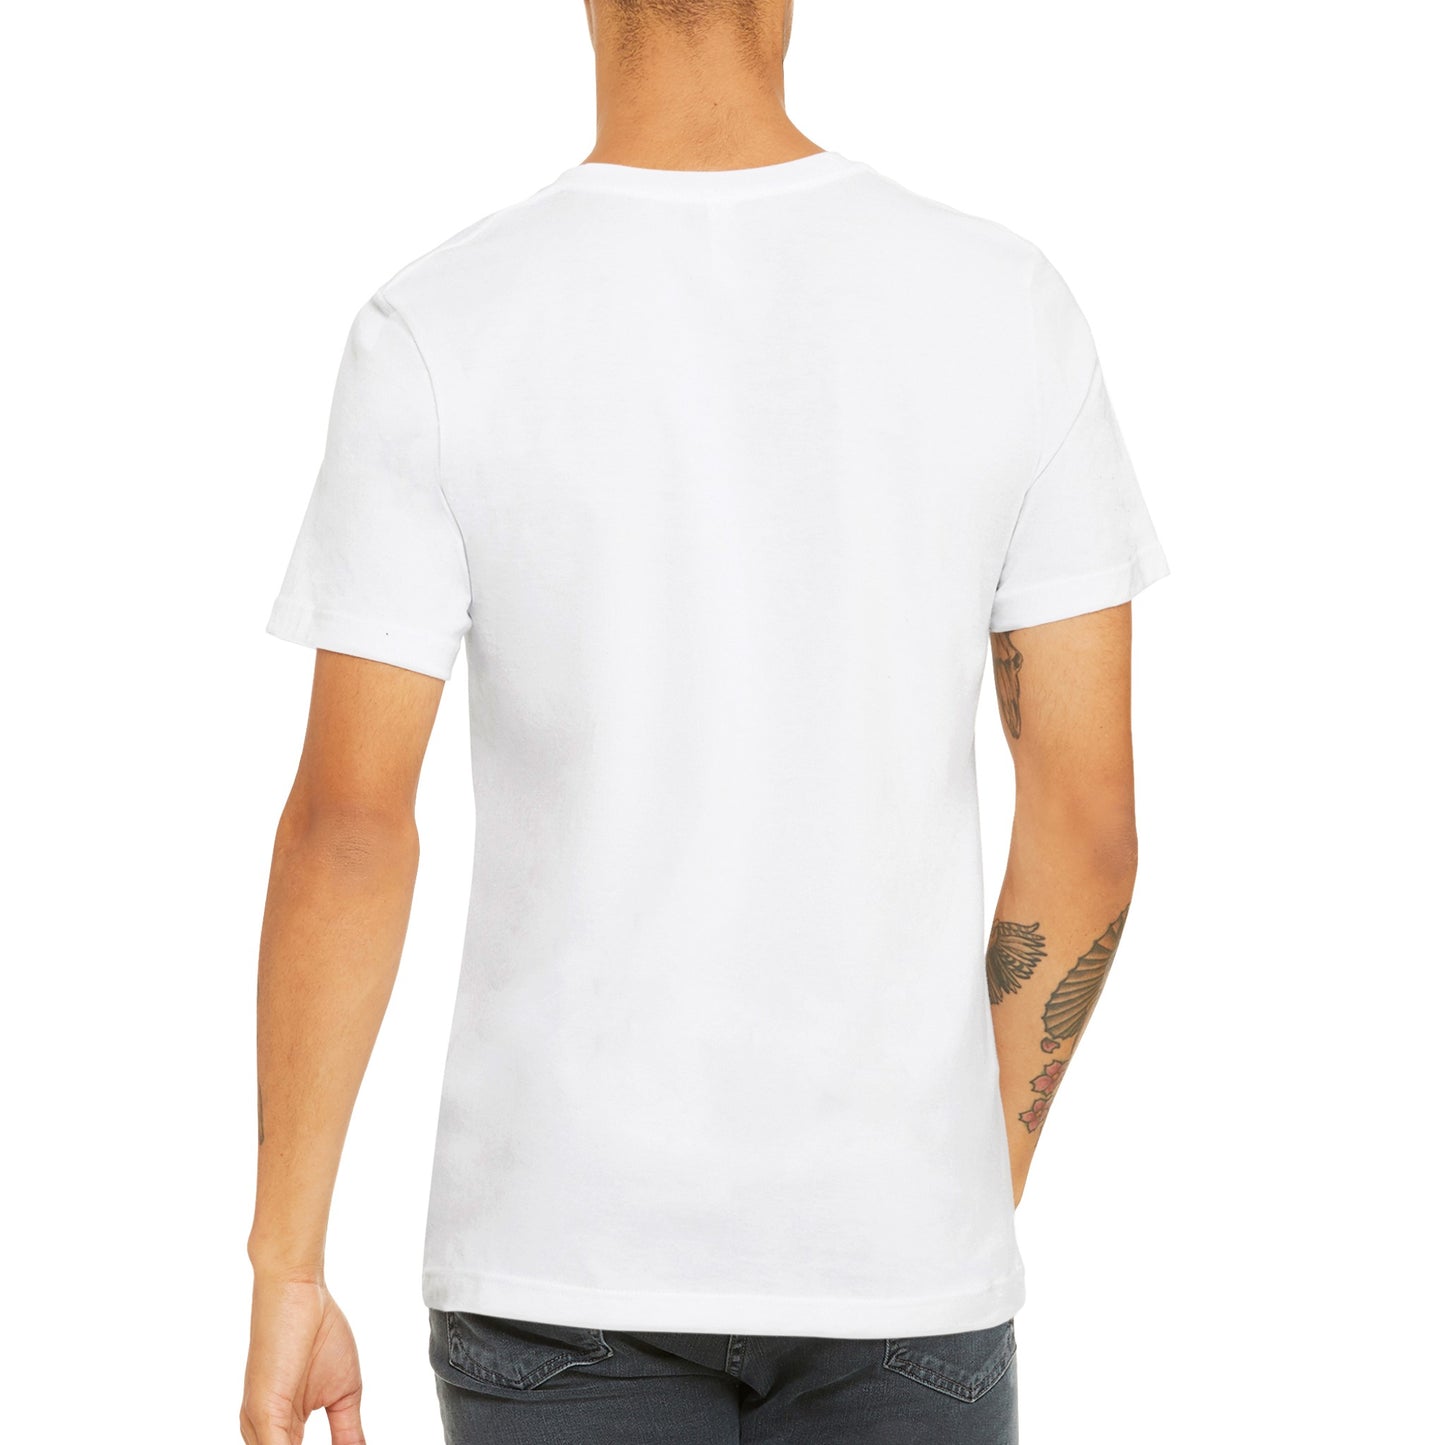 BPM - Premium Männer / Unisex T-Shirt mit Rundhalsausschnitt